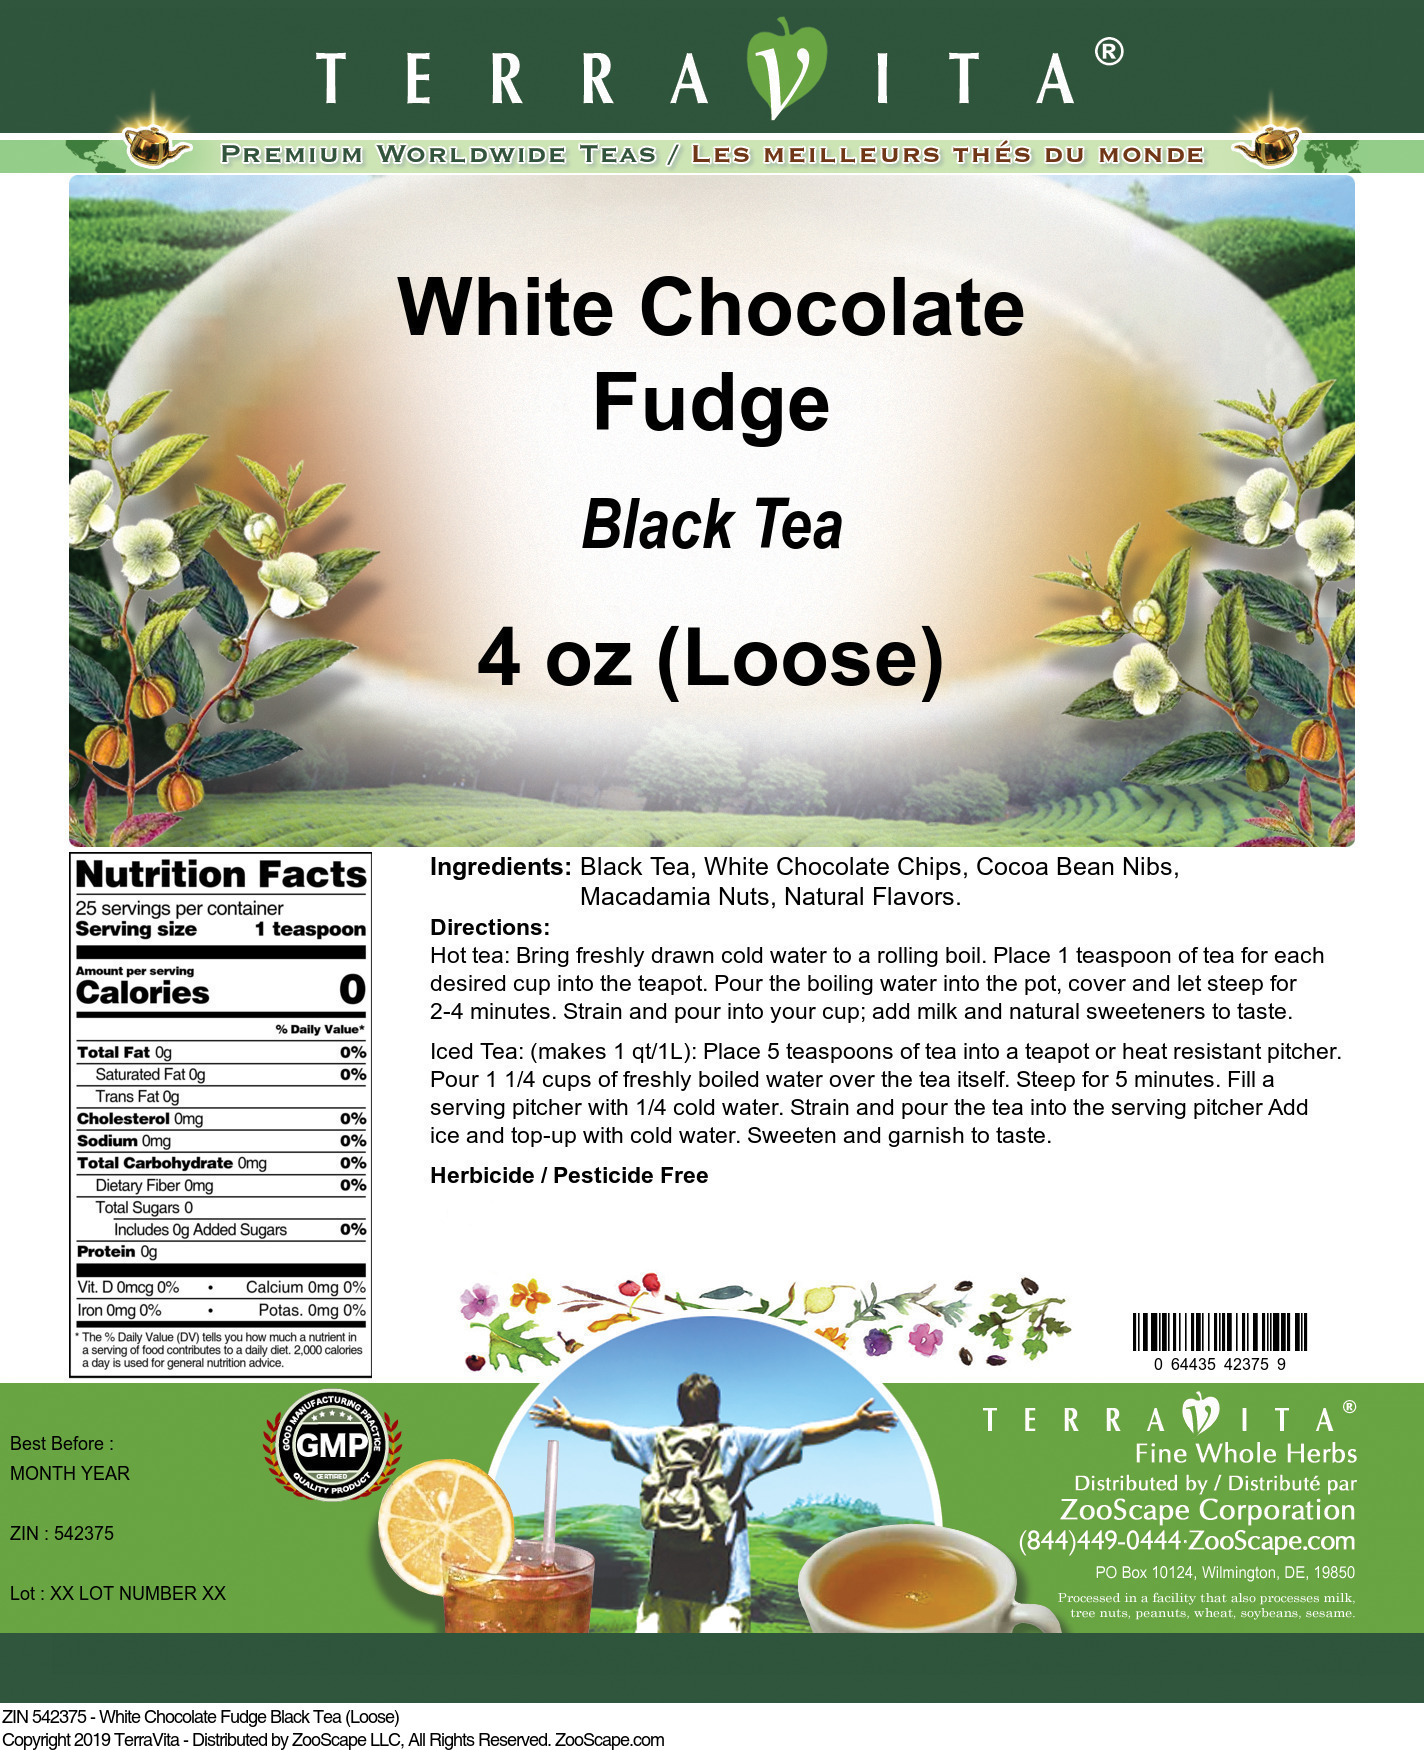 White Chocolate Fudge Black Tea (Loose) - Label